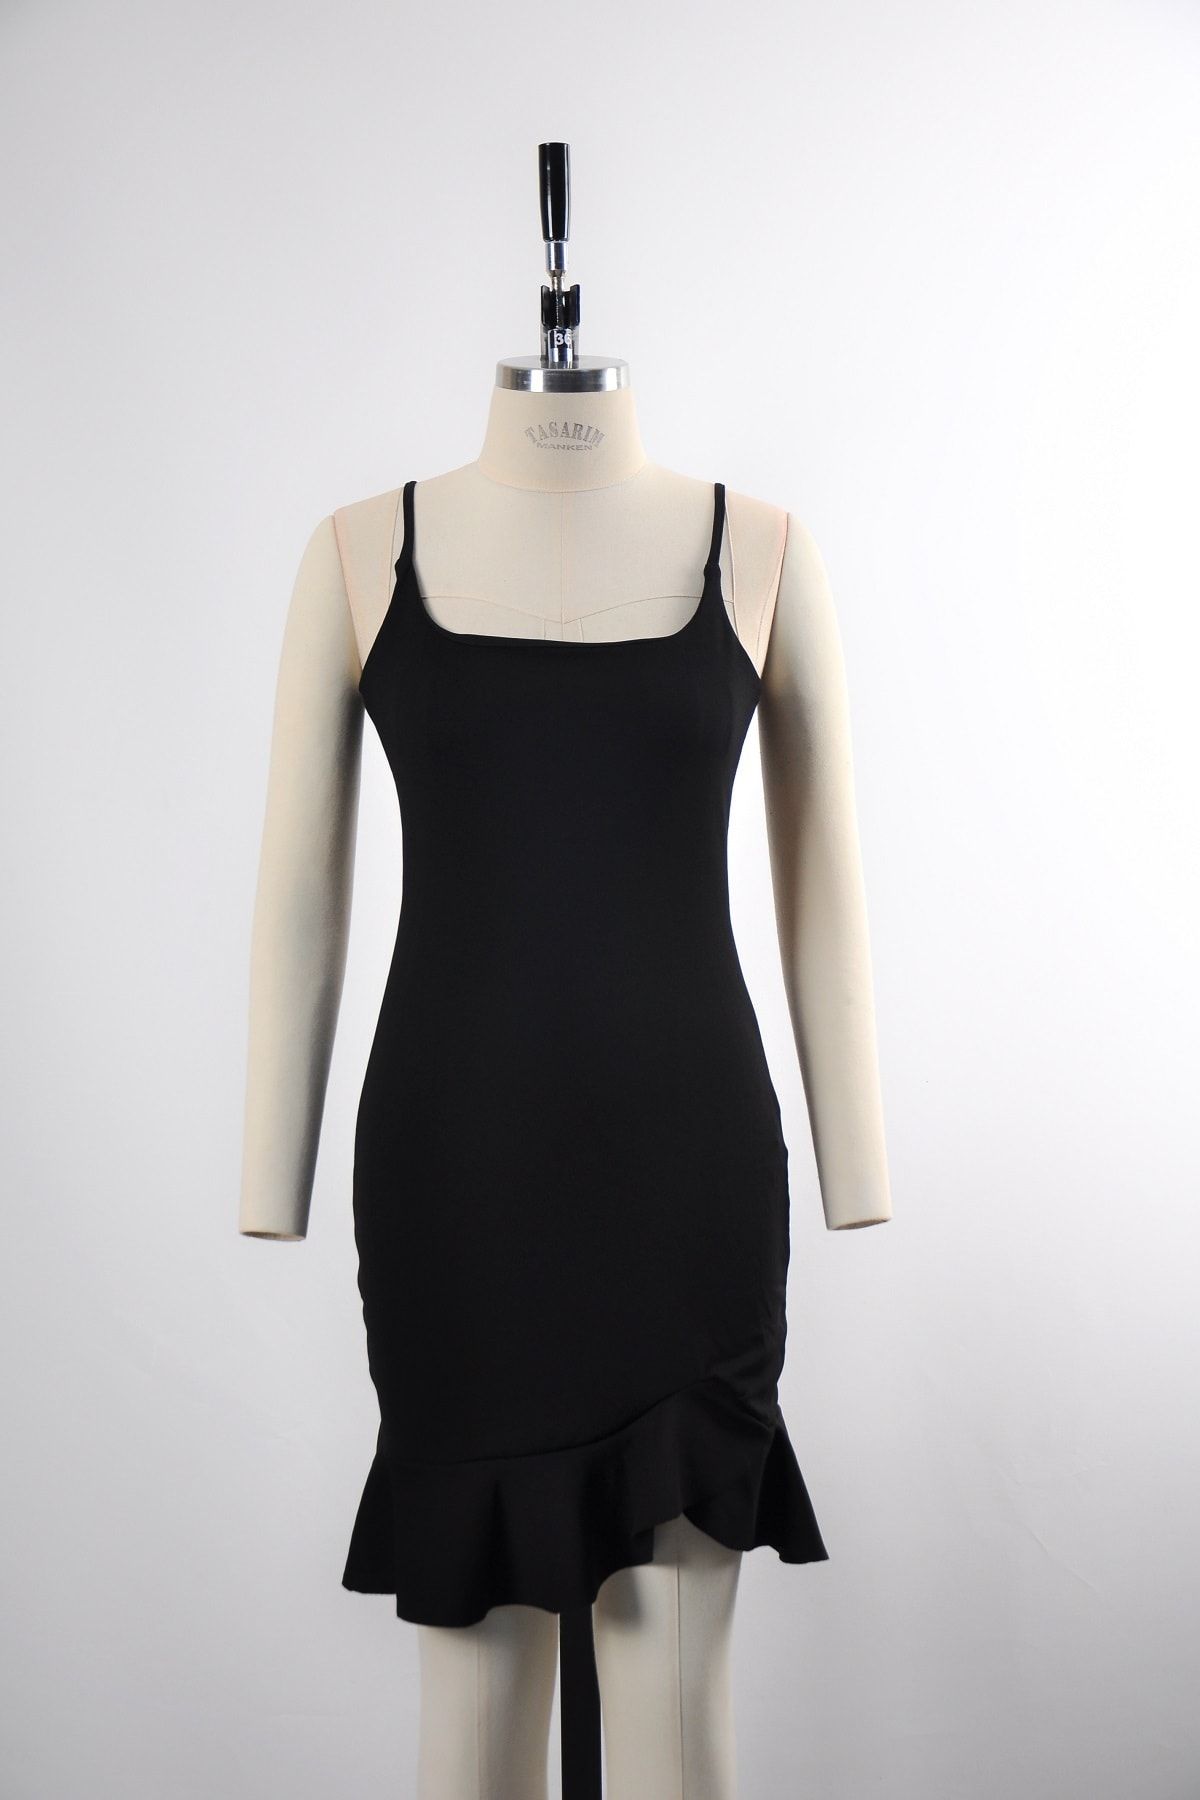 lovebox Kadın Siyah Esnek Krep Kumaş Ince Askılı Etek Ucu Volan Detaylı Abiye Elbise